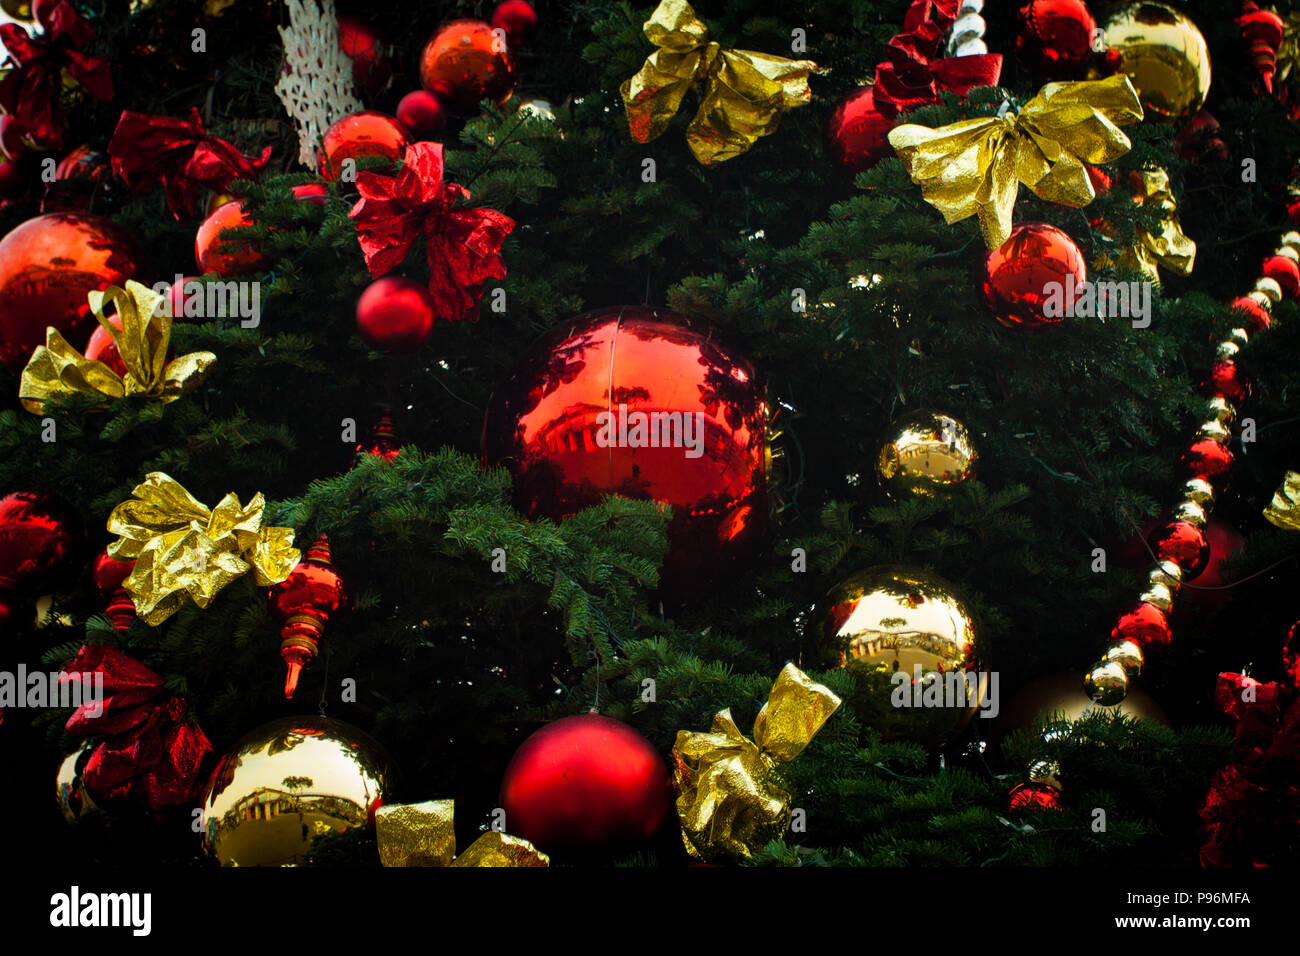 Albero Di Natale Rosso Oro E Verde.Albero Di Natale Decor Oro Rosso E Verde Foto Stock Alamy